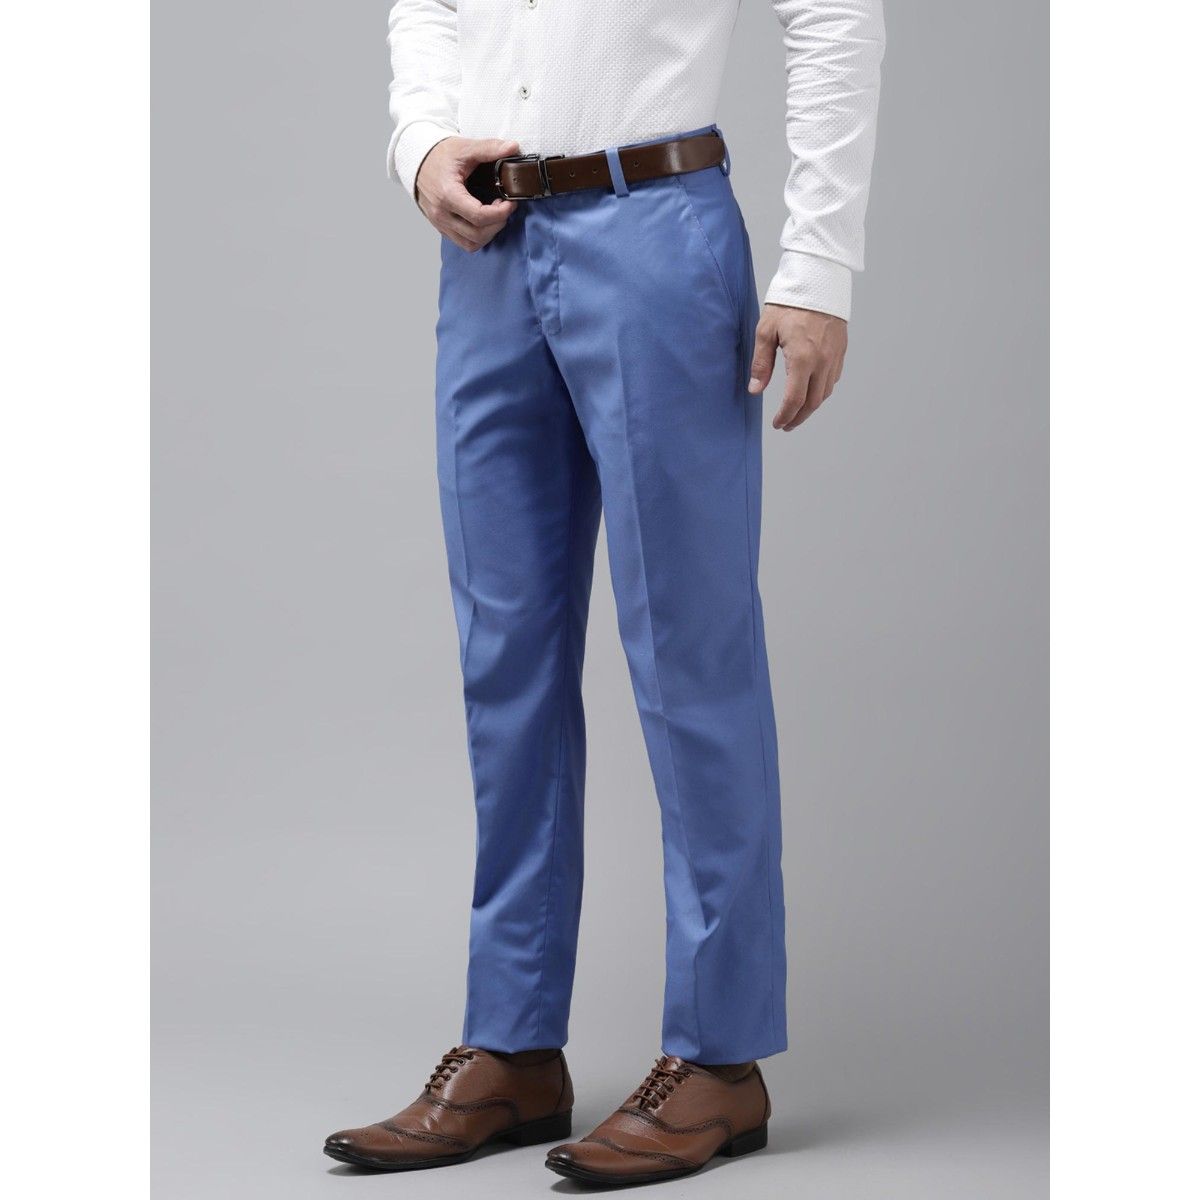 ADAGRO Mens Trousers Men Plaid Pocket Side Pants (Color : Navy Blue, Size :  X-Large) : Amazon.com.au: Clothing, Shoes & Accessories